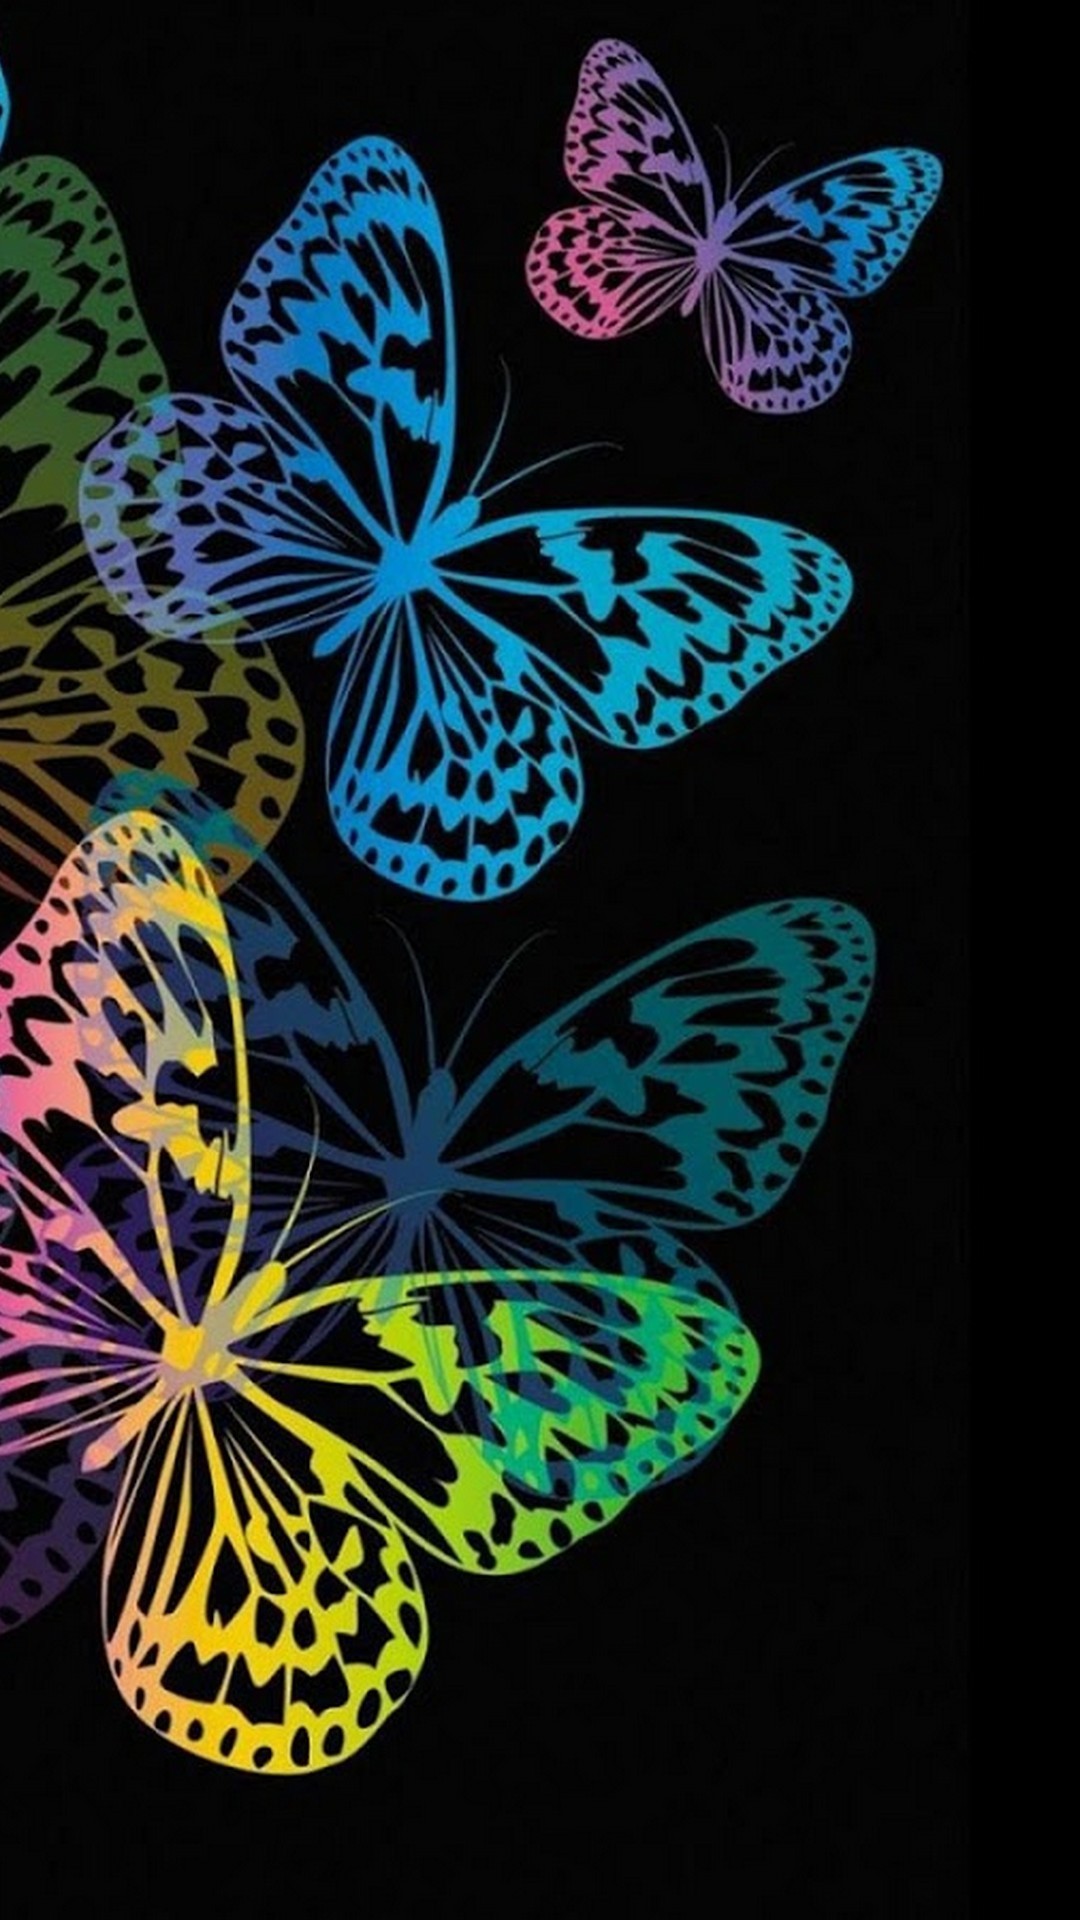 Aesthetic Butterfly Wallpaper - KoLPaPer - Awesome Free HD ...